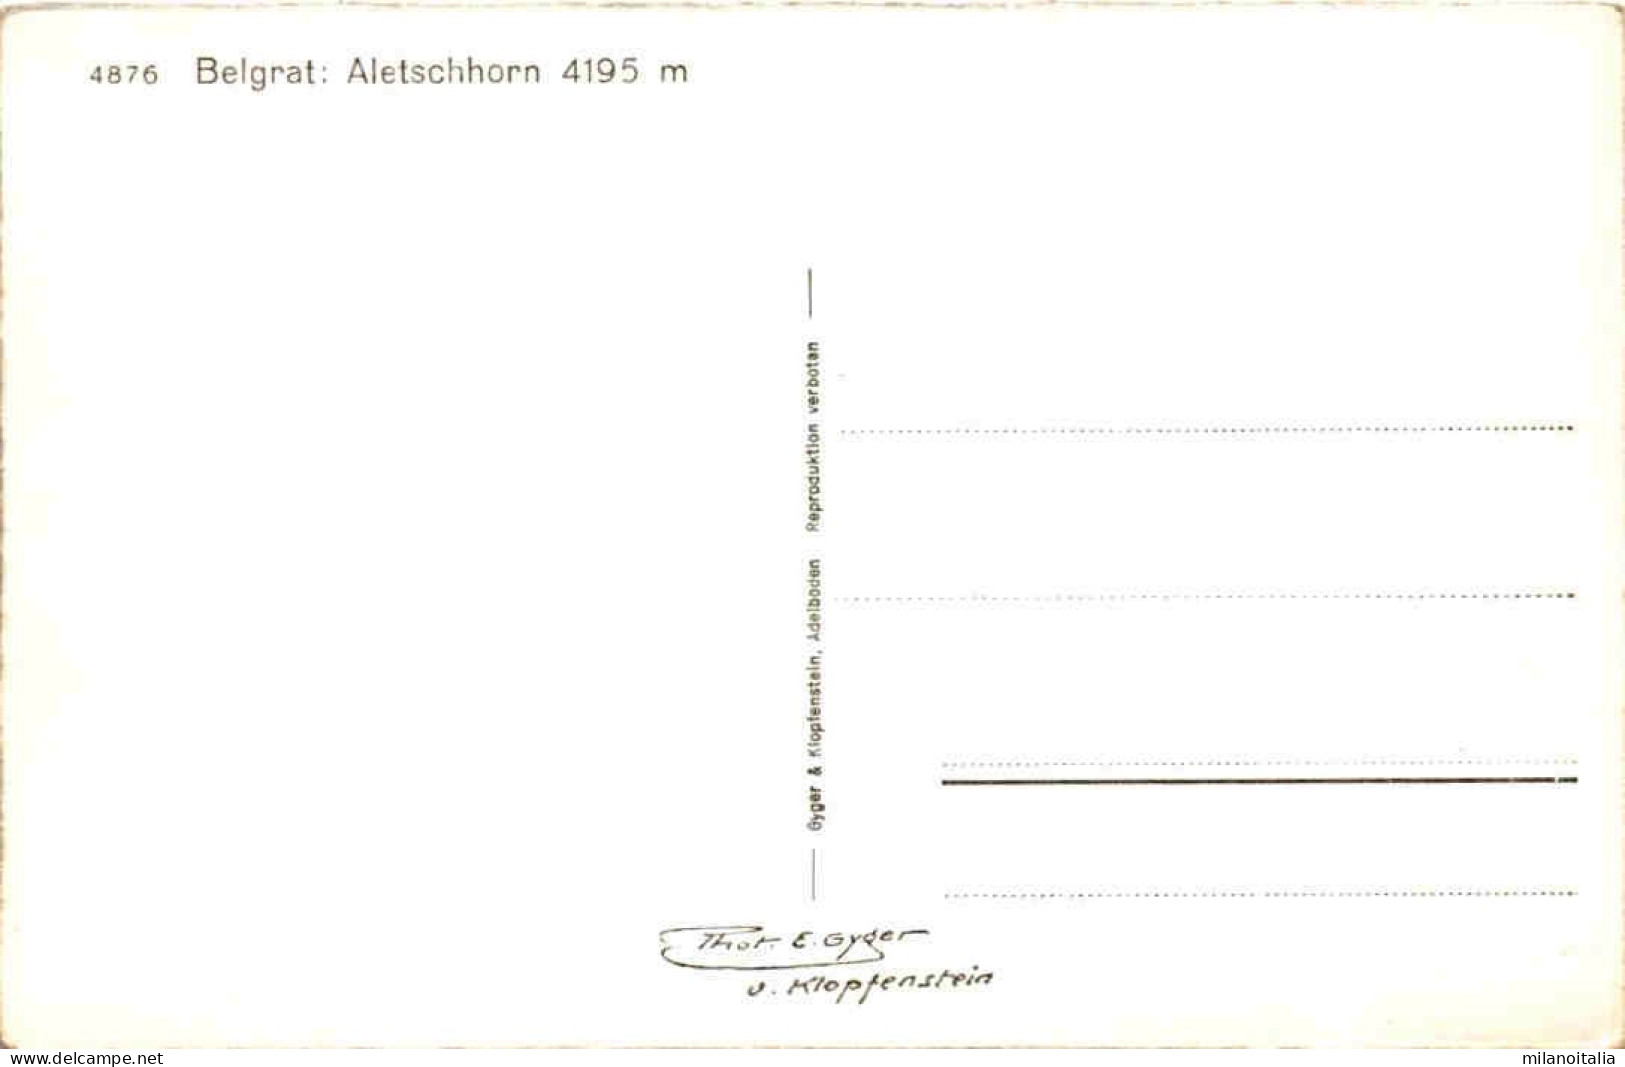 Belgrat: Aletschhorn 4195 M (4876) - Riederalp